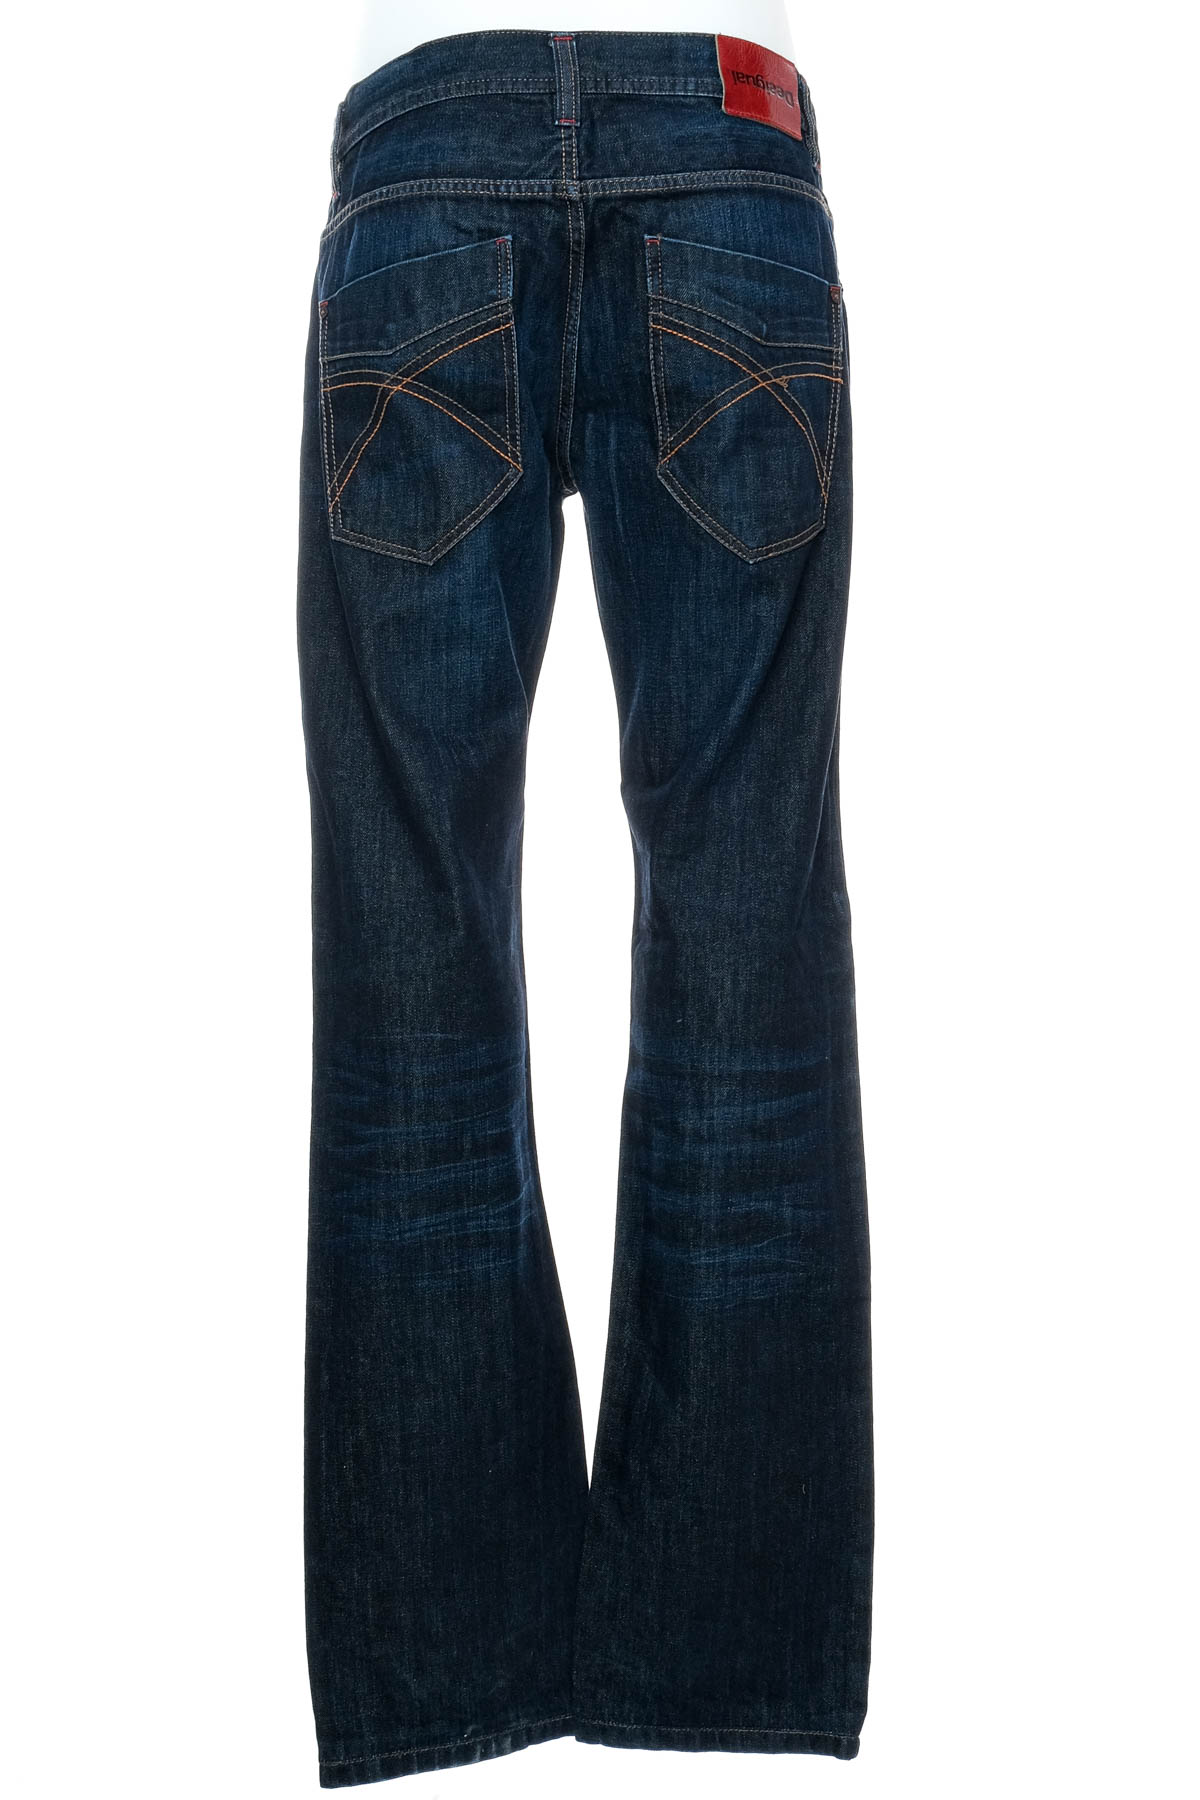 Jeans pentru bărbăți - Desigual - 1